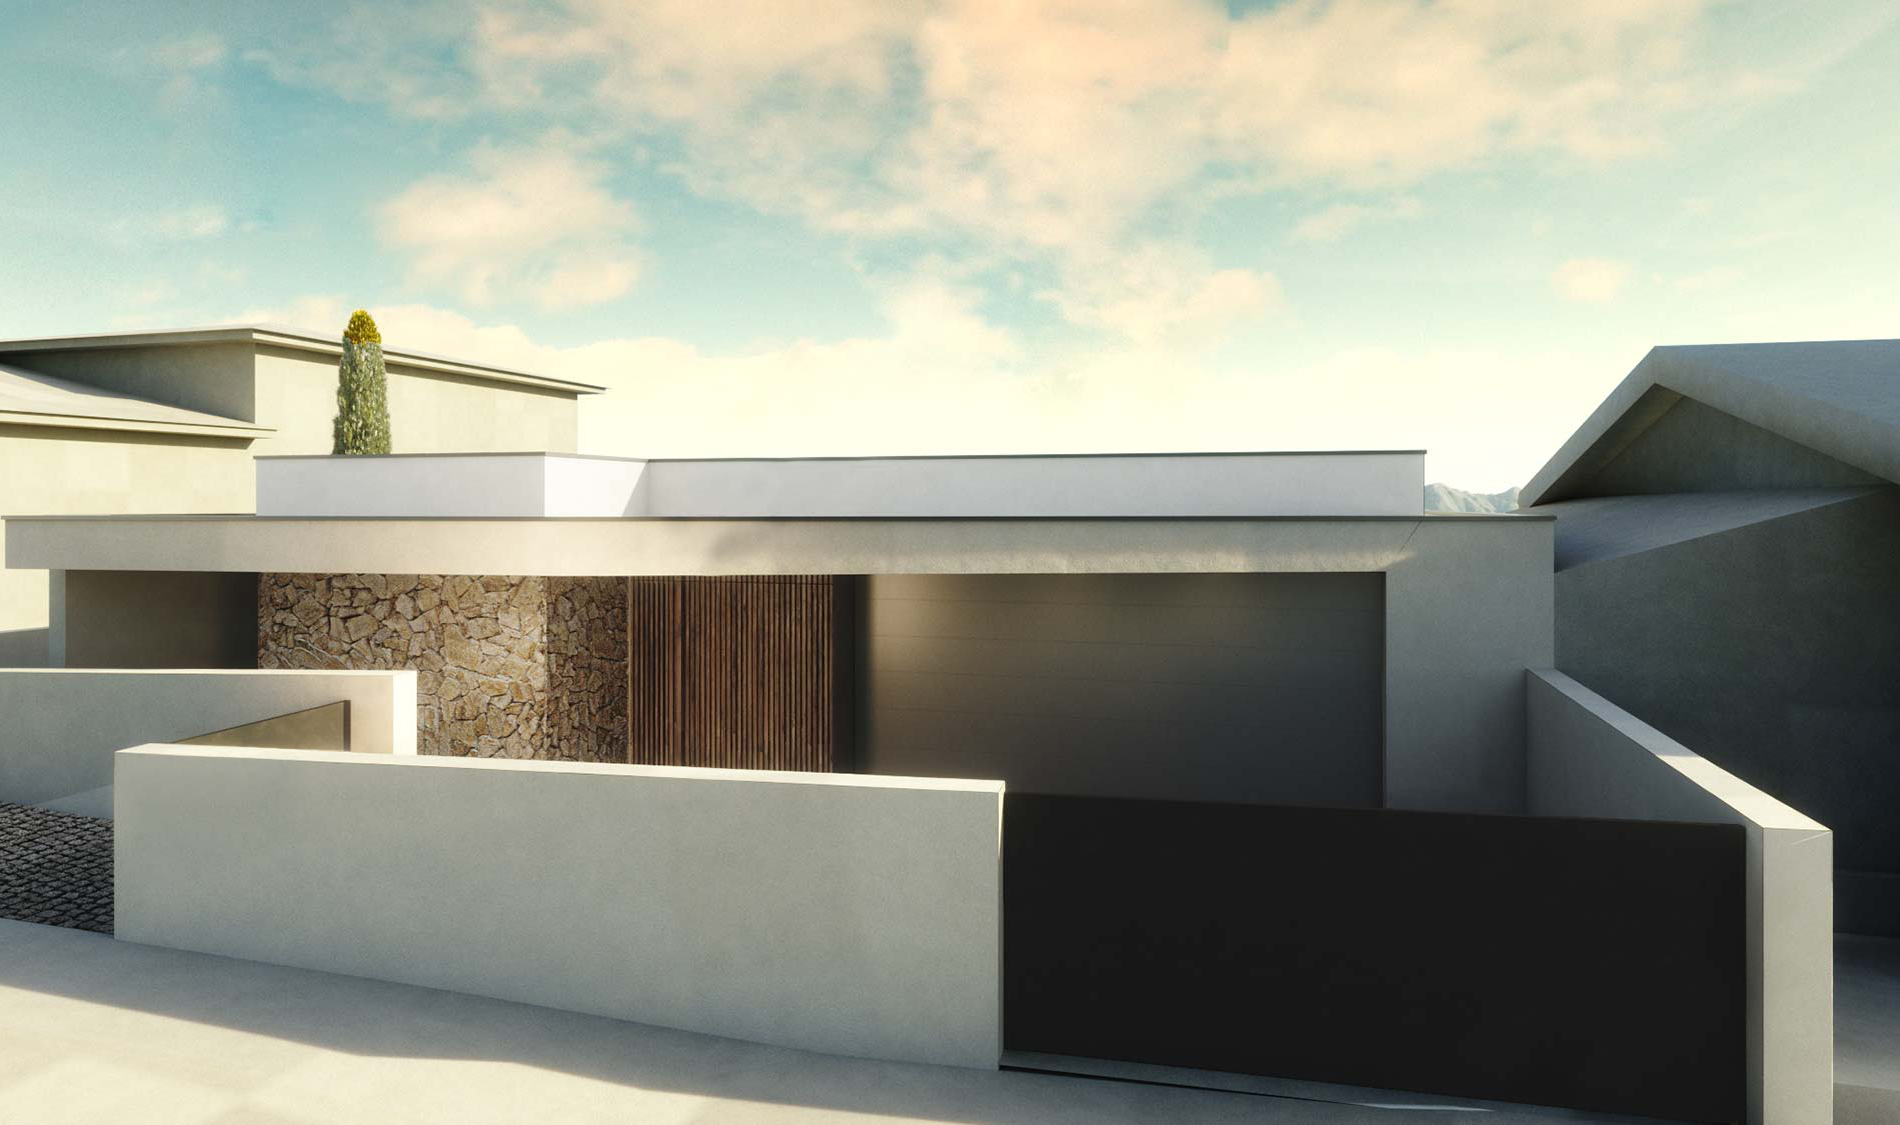 Casa moderna, Barão de Joane. Vista exterior com acesso carral, portão de garagem, e acesso pedonal. Projeto Obra Atelier